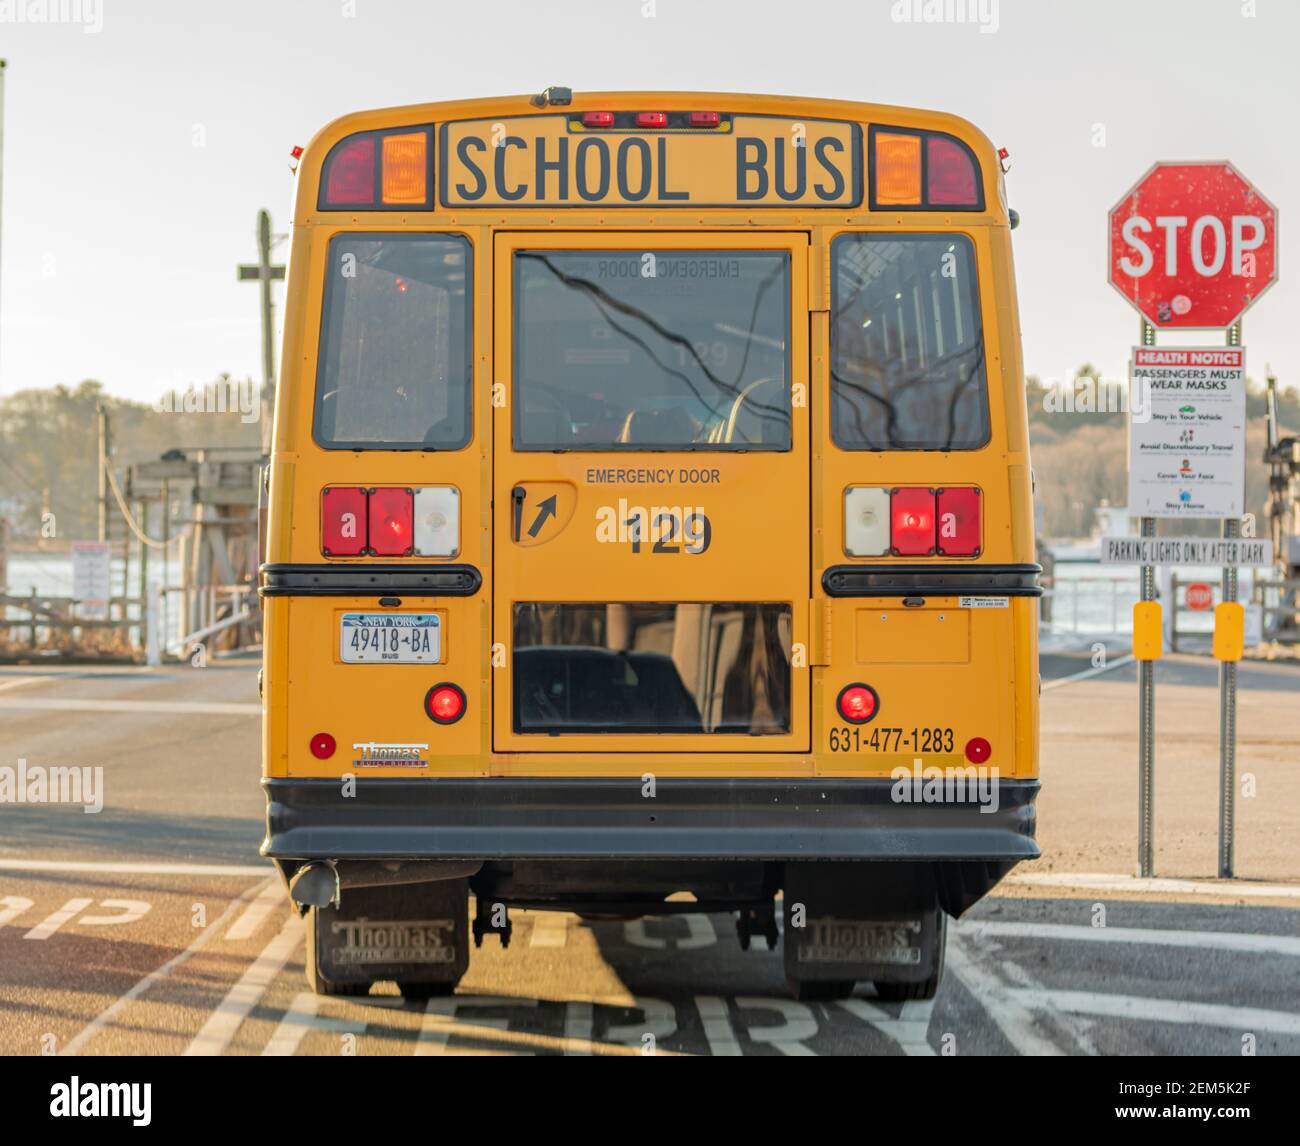 Bild von der Rückseite eines Schulbusses Stockfoto